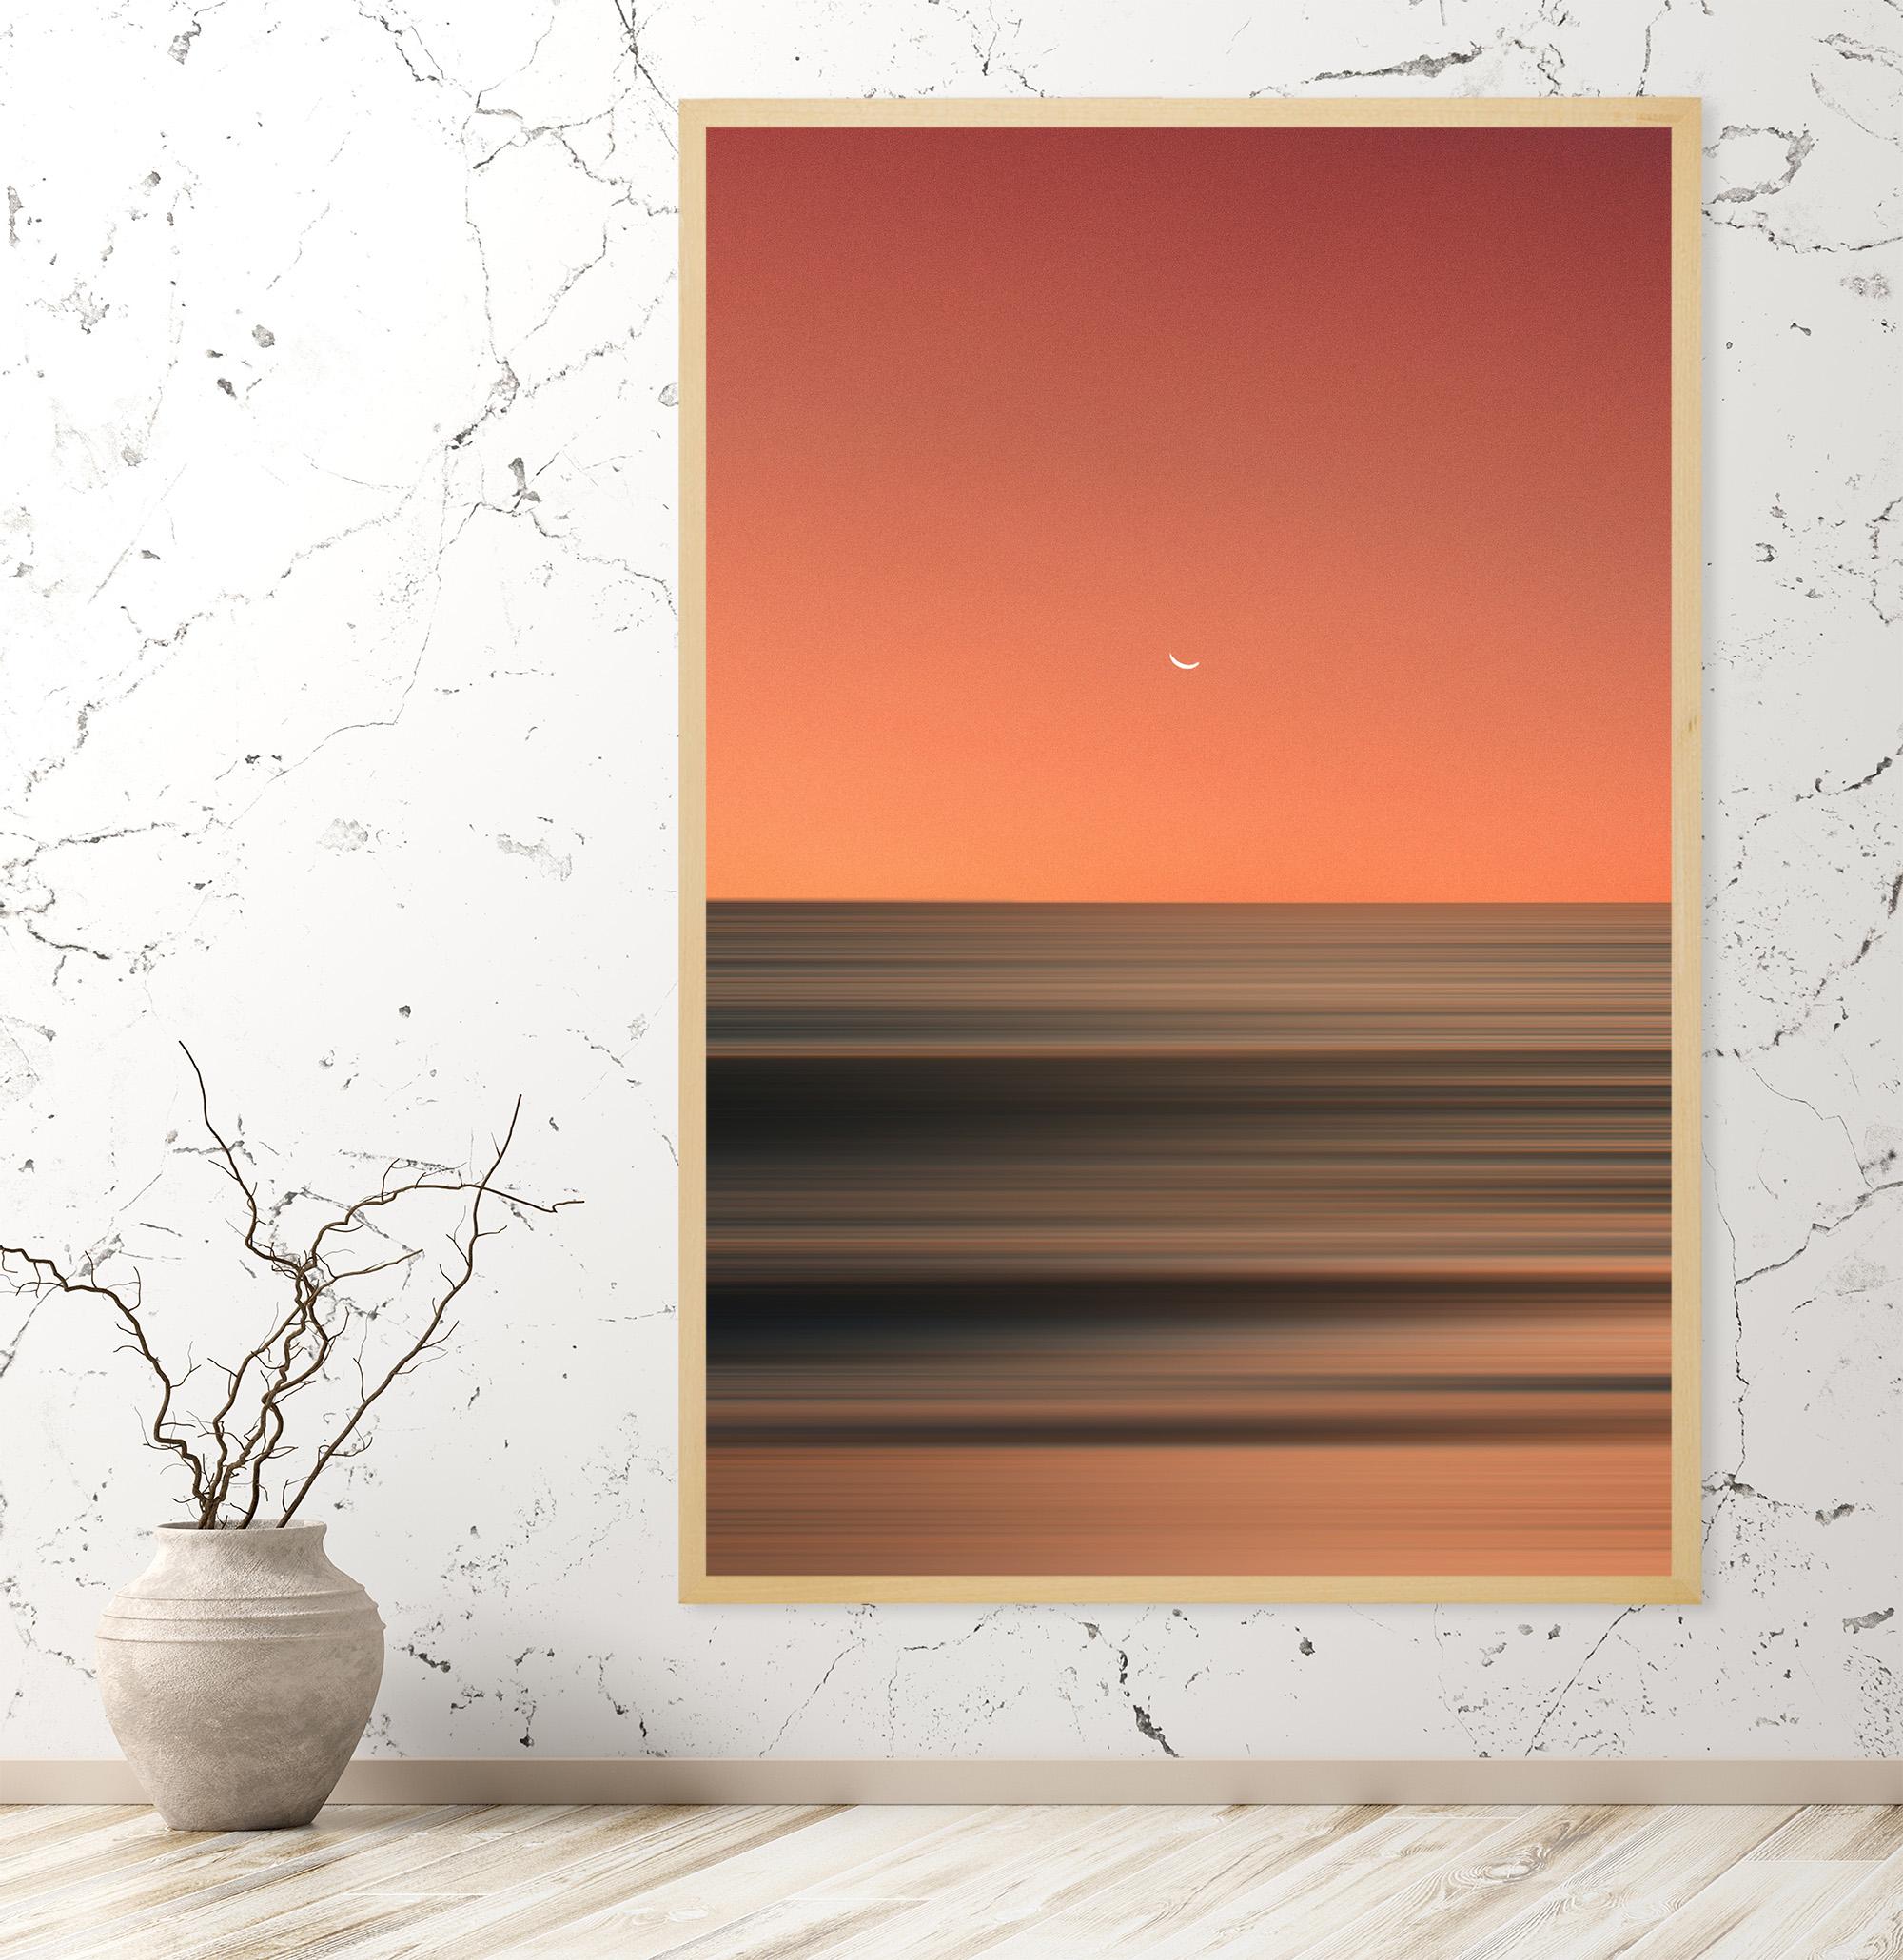 Photographie « Smooth evening » encadrée par Karim, 162,6 x 112,4 cm - Orange Landscape Photograph par Karim Amr